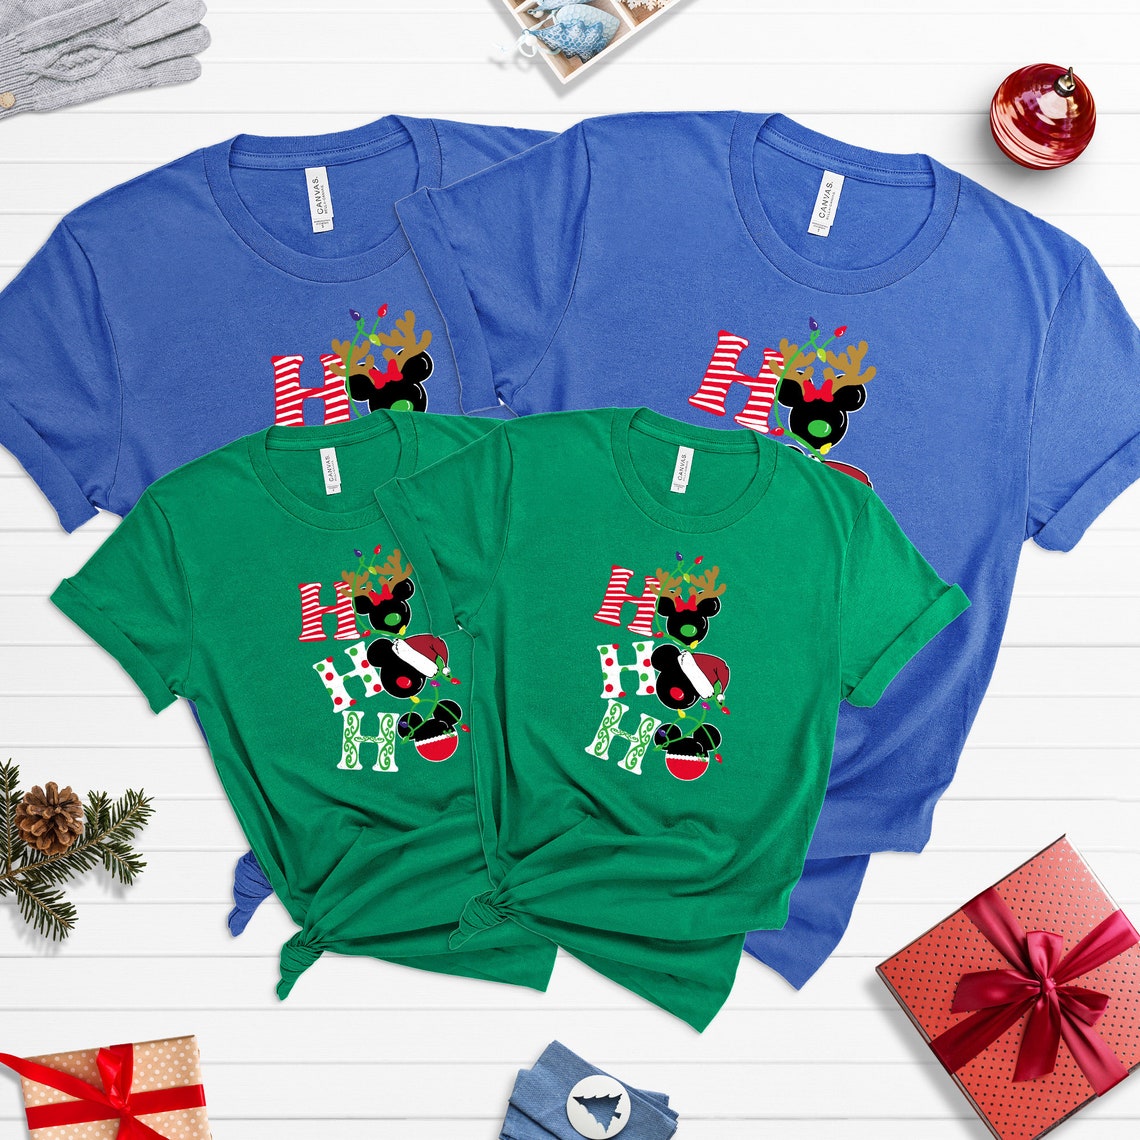 Disney Christmas tees, HOHOHO shirts, Disney Christmas shirt, Christmas family shirts, Disney Christmas, Chrismtas shirt